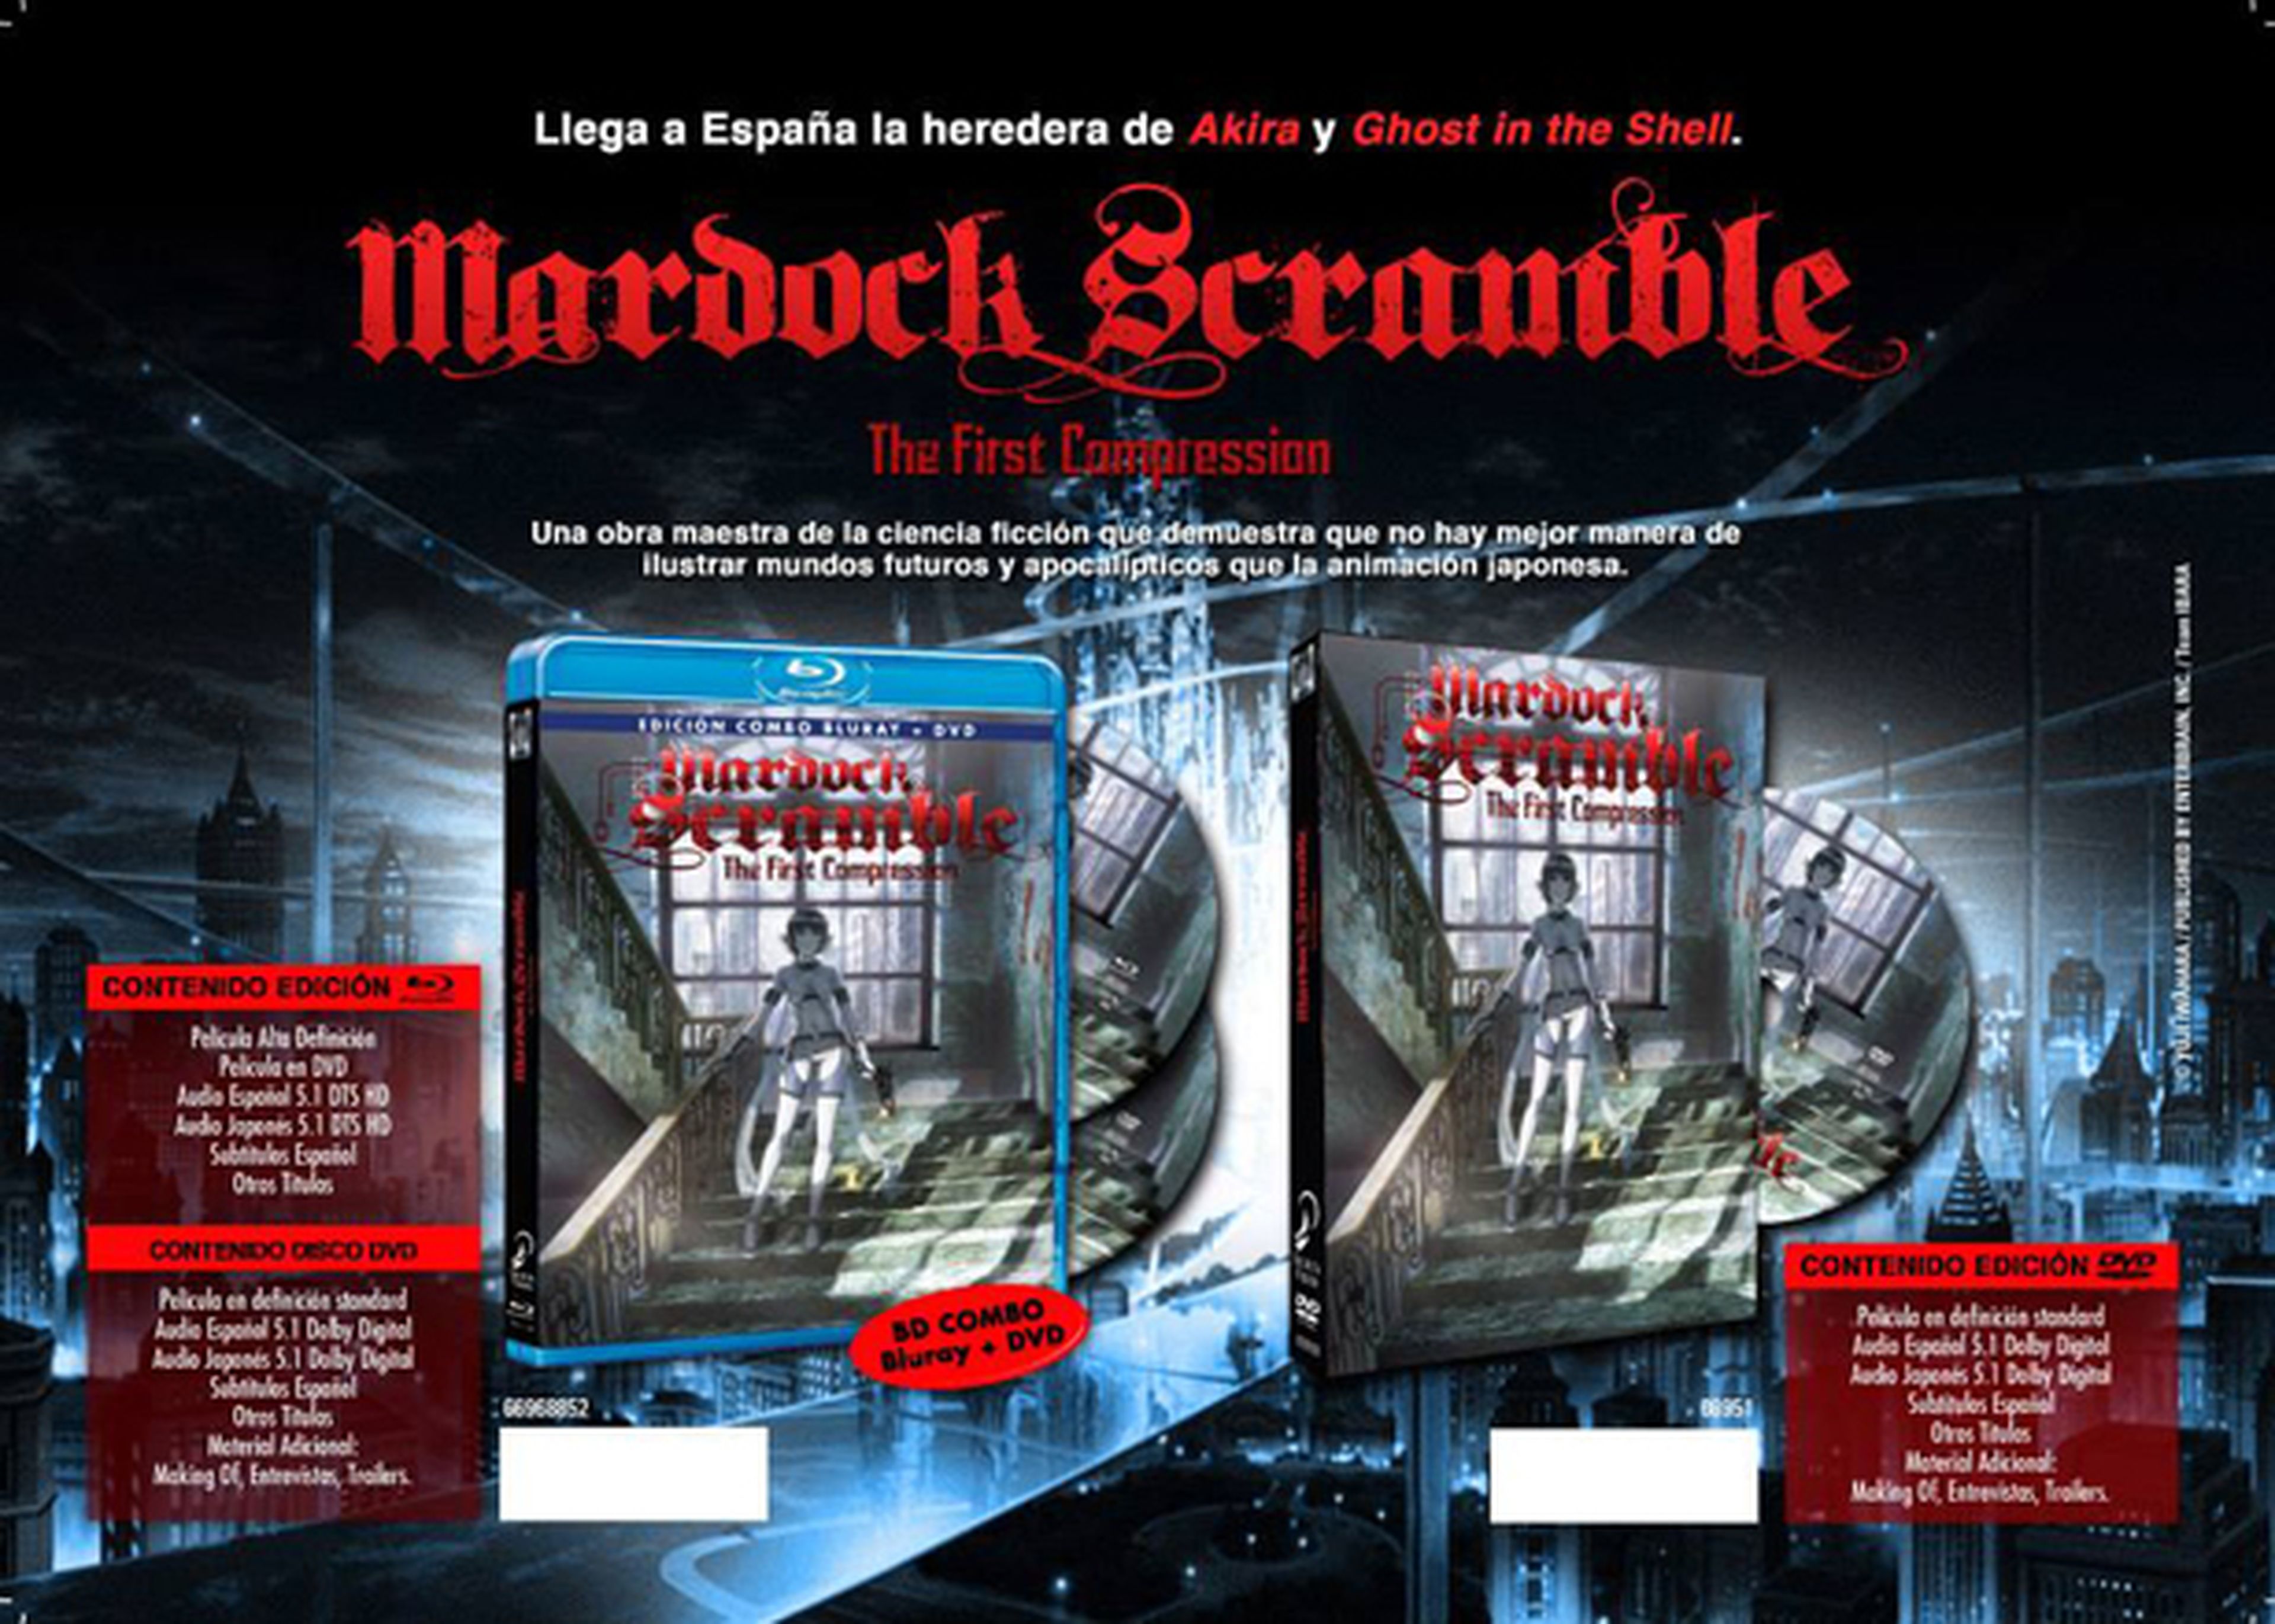 En noviembre llega el primer film de Mardock Scramble